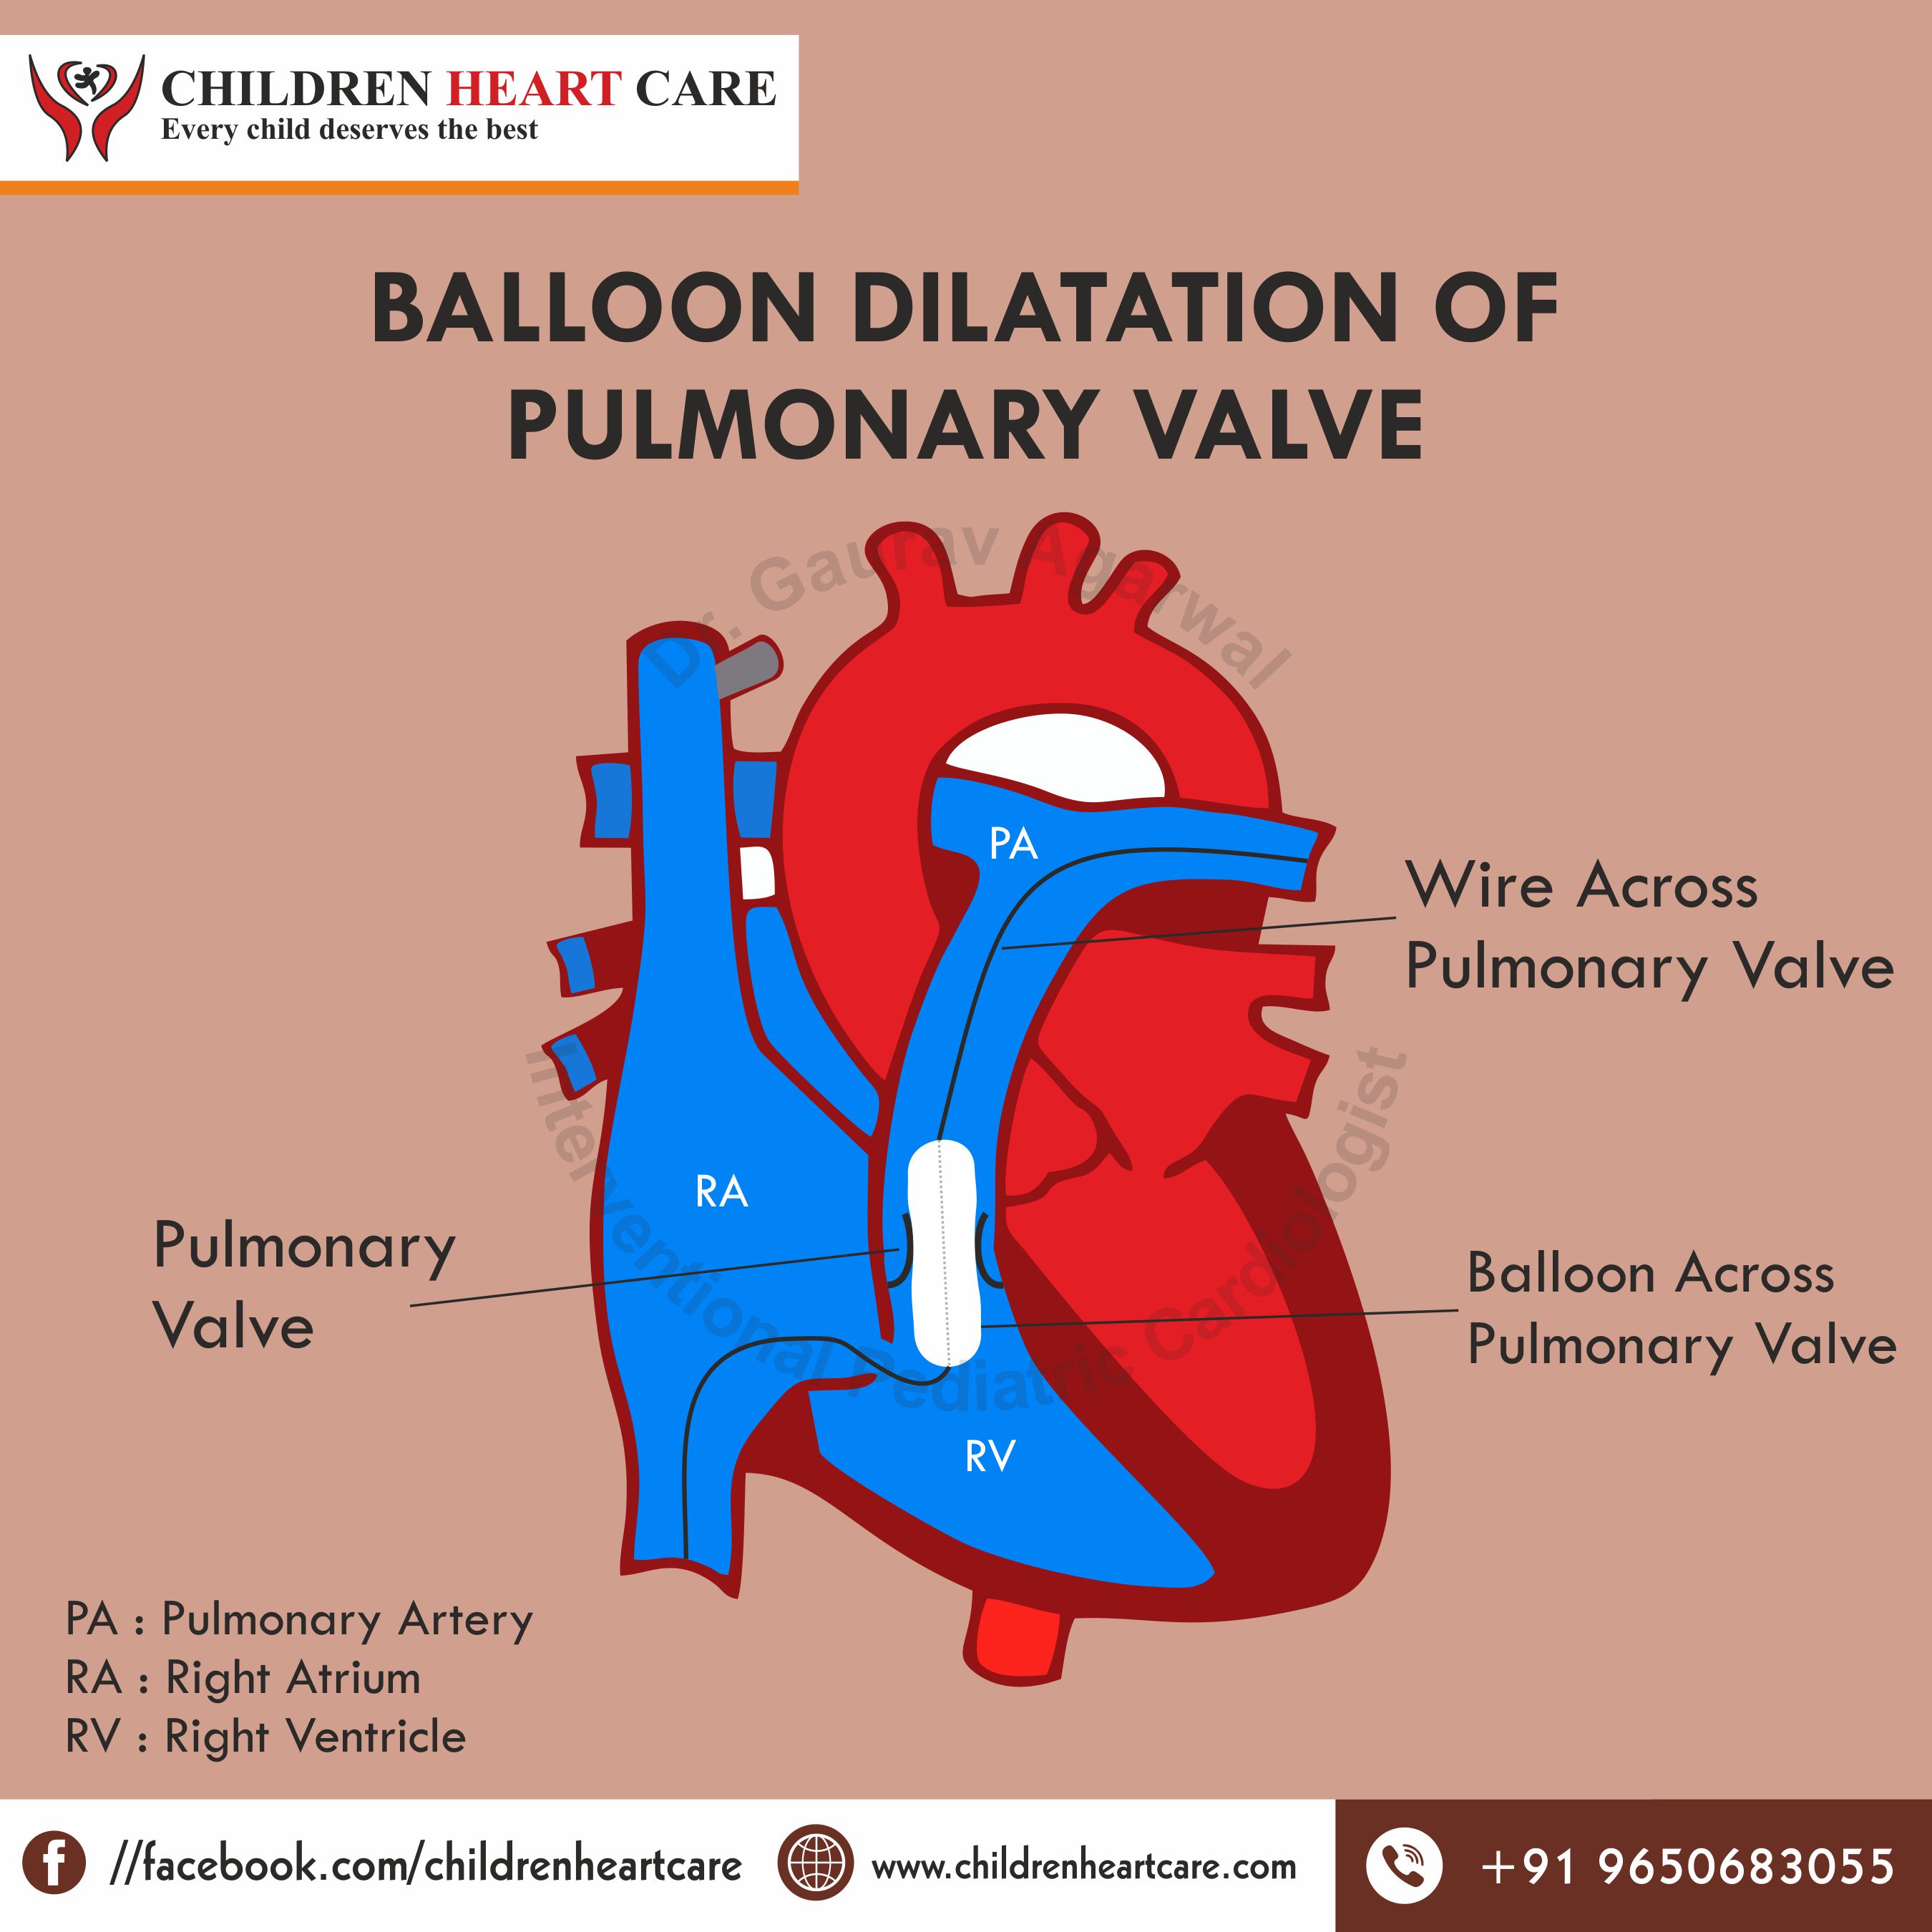 pulmonary valve